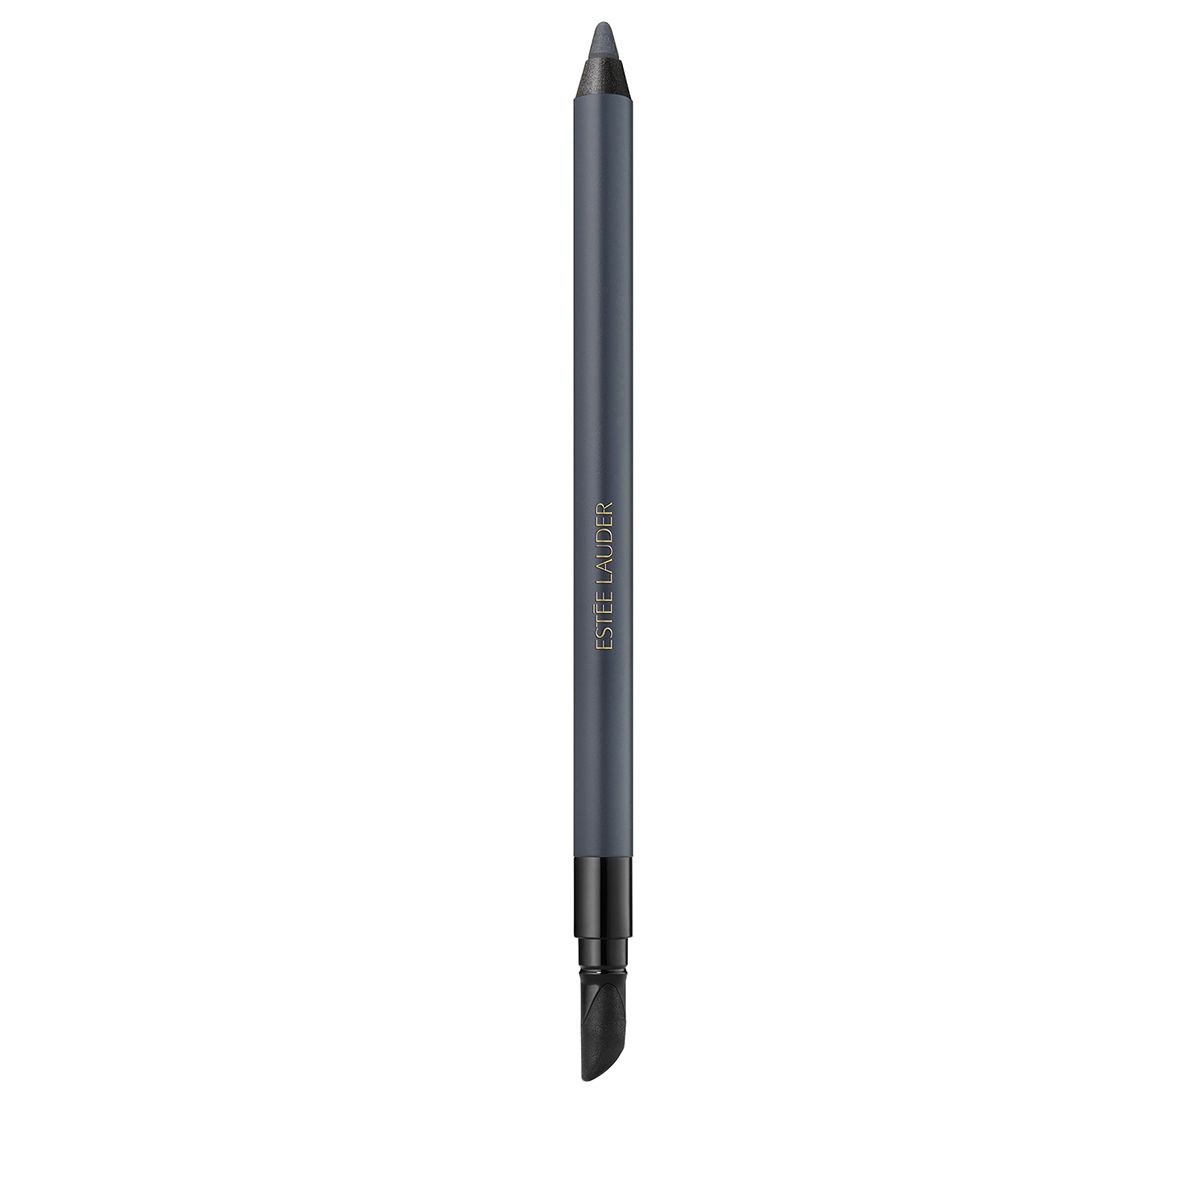 Estée Lauder Double Wear 24H Waterproof Gel Eye Pencil водостойкий карандаш для глаз 05 Smoke 1.2g